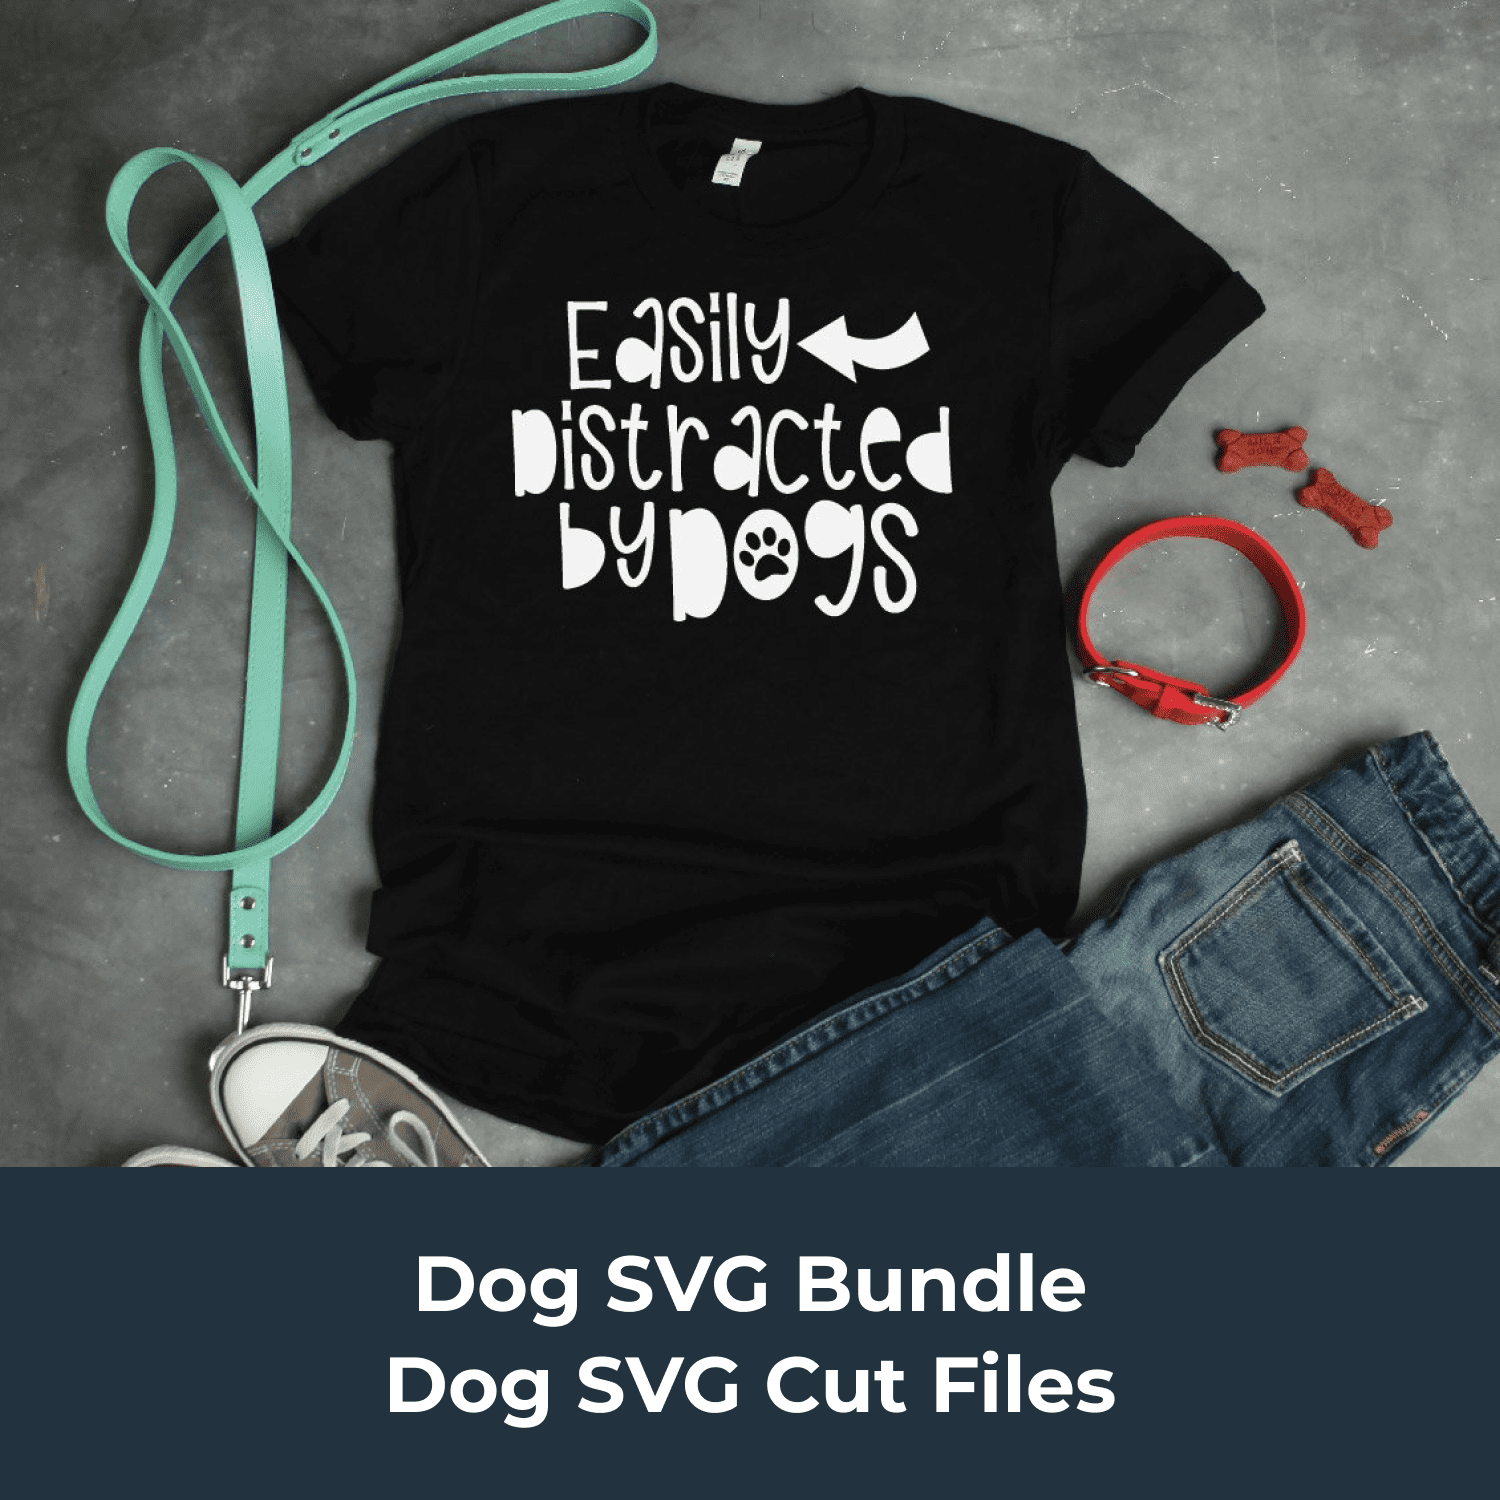 Dog SVG Bundle - Dog SVG Cut Files cover image.